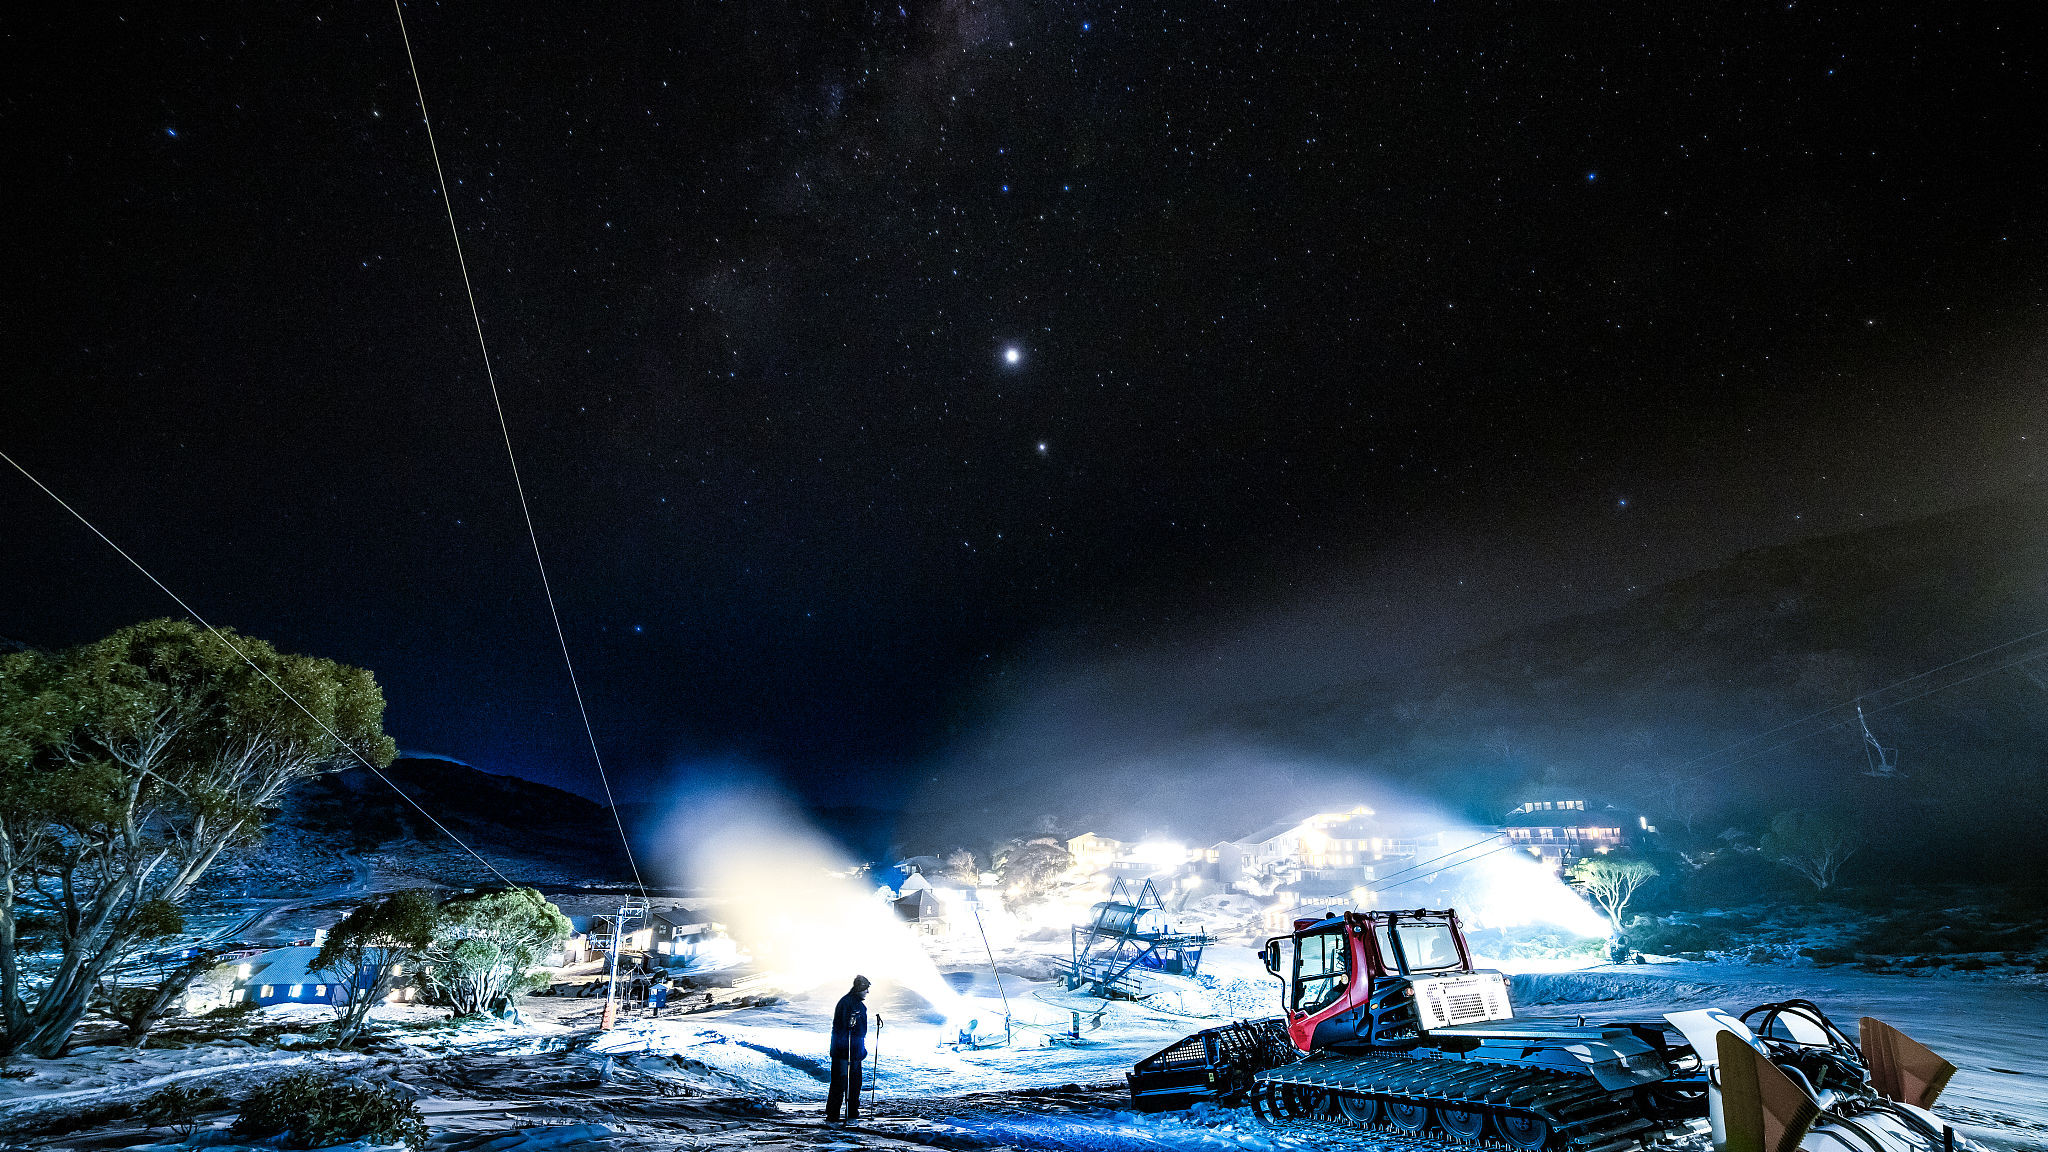 澳大利亚夜空星光璀璨 银河横跨天际